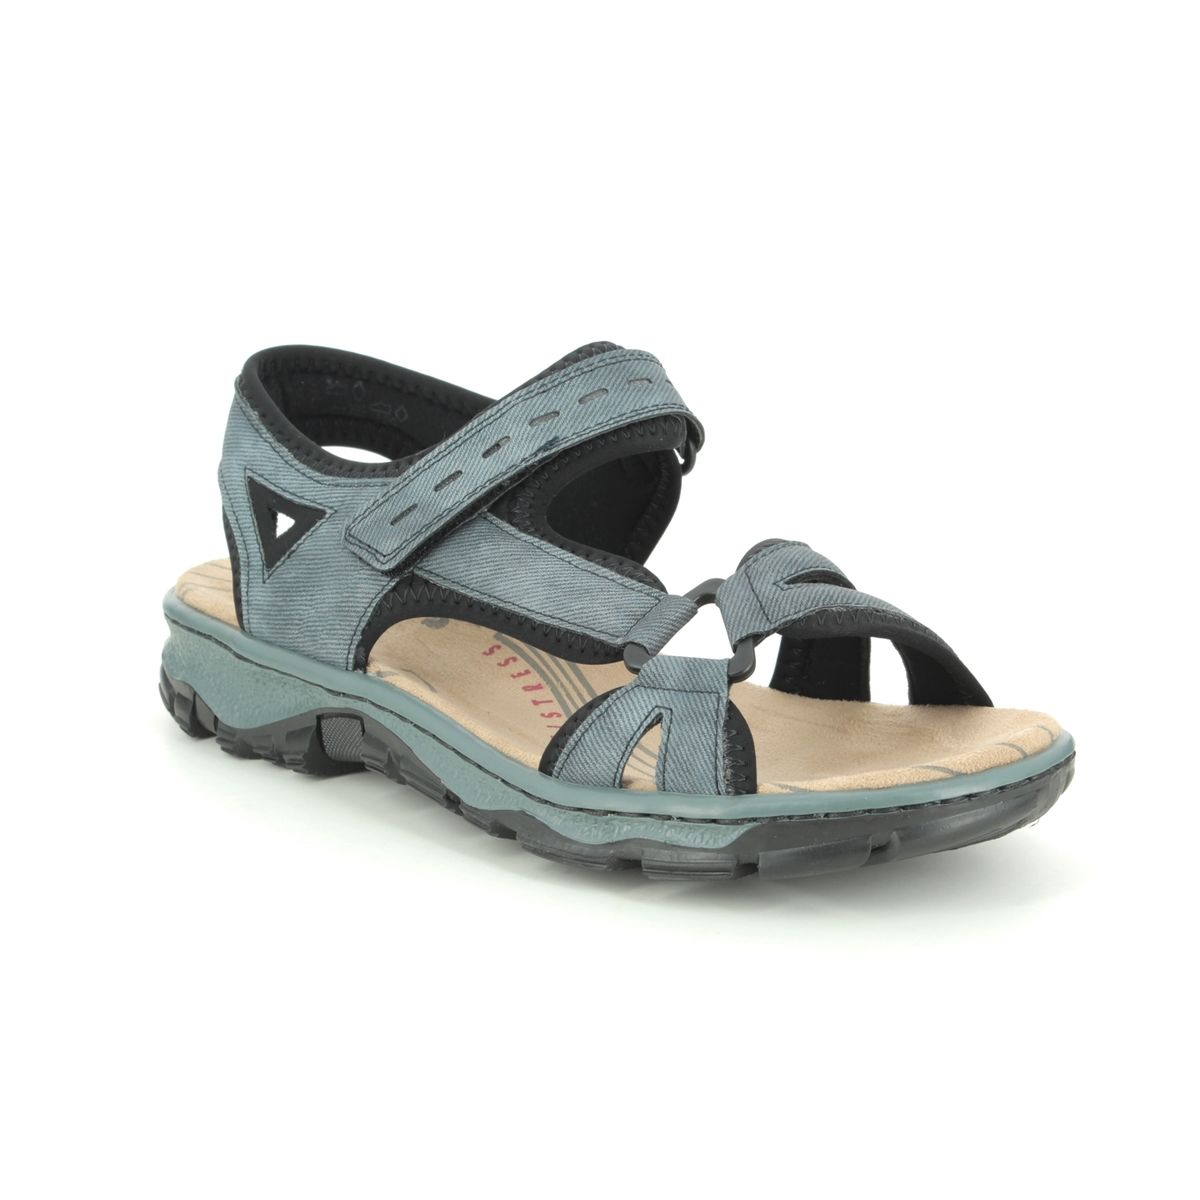 Ib Mængde af bekræfte Rieker 68879-14 Denim blue Walking Sandals